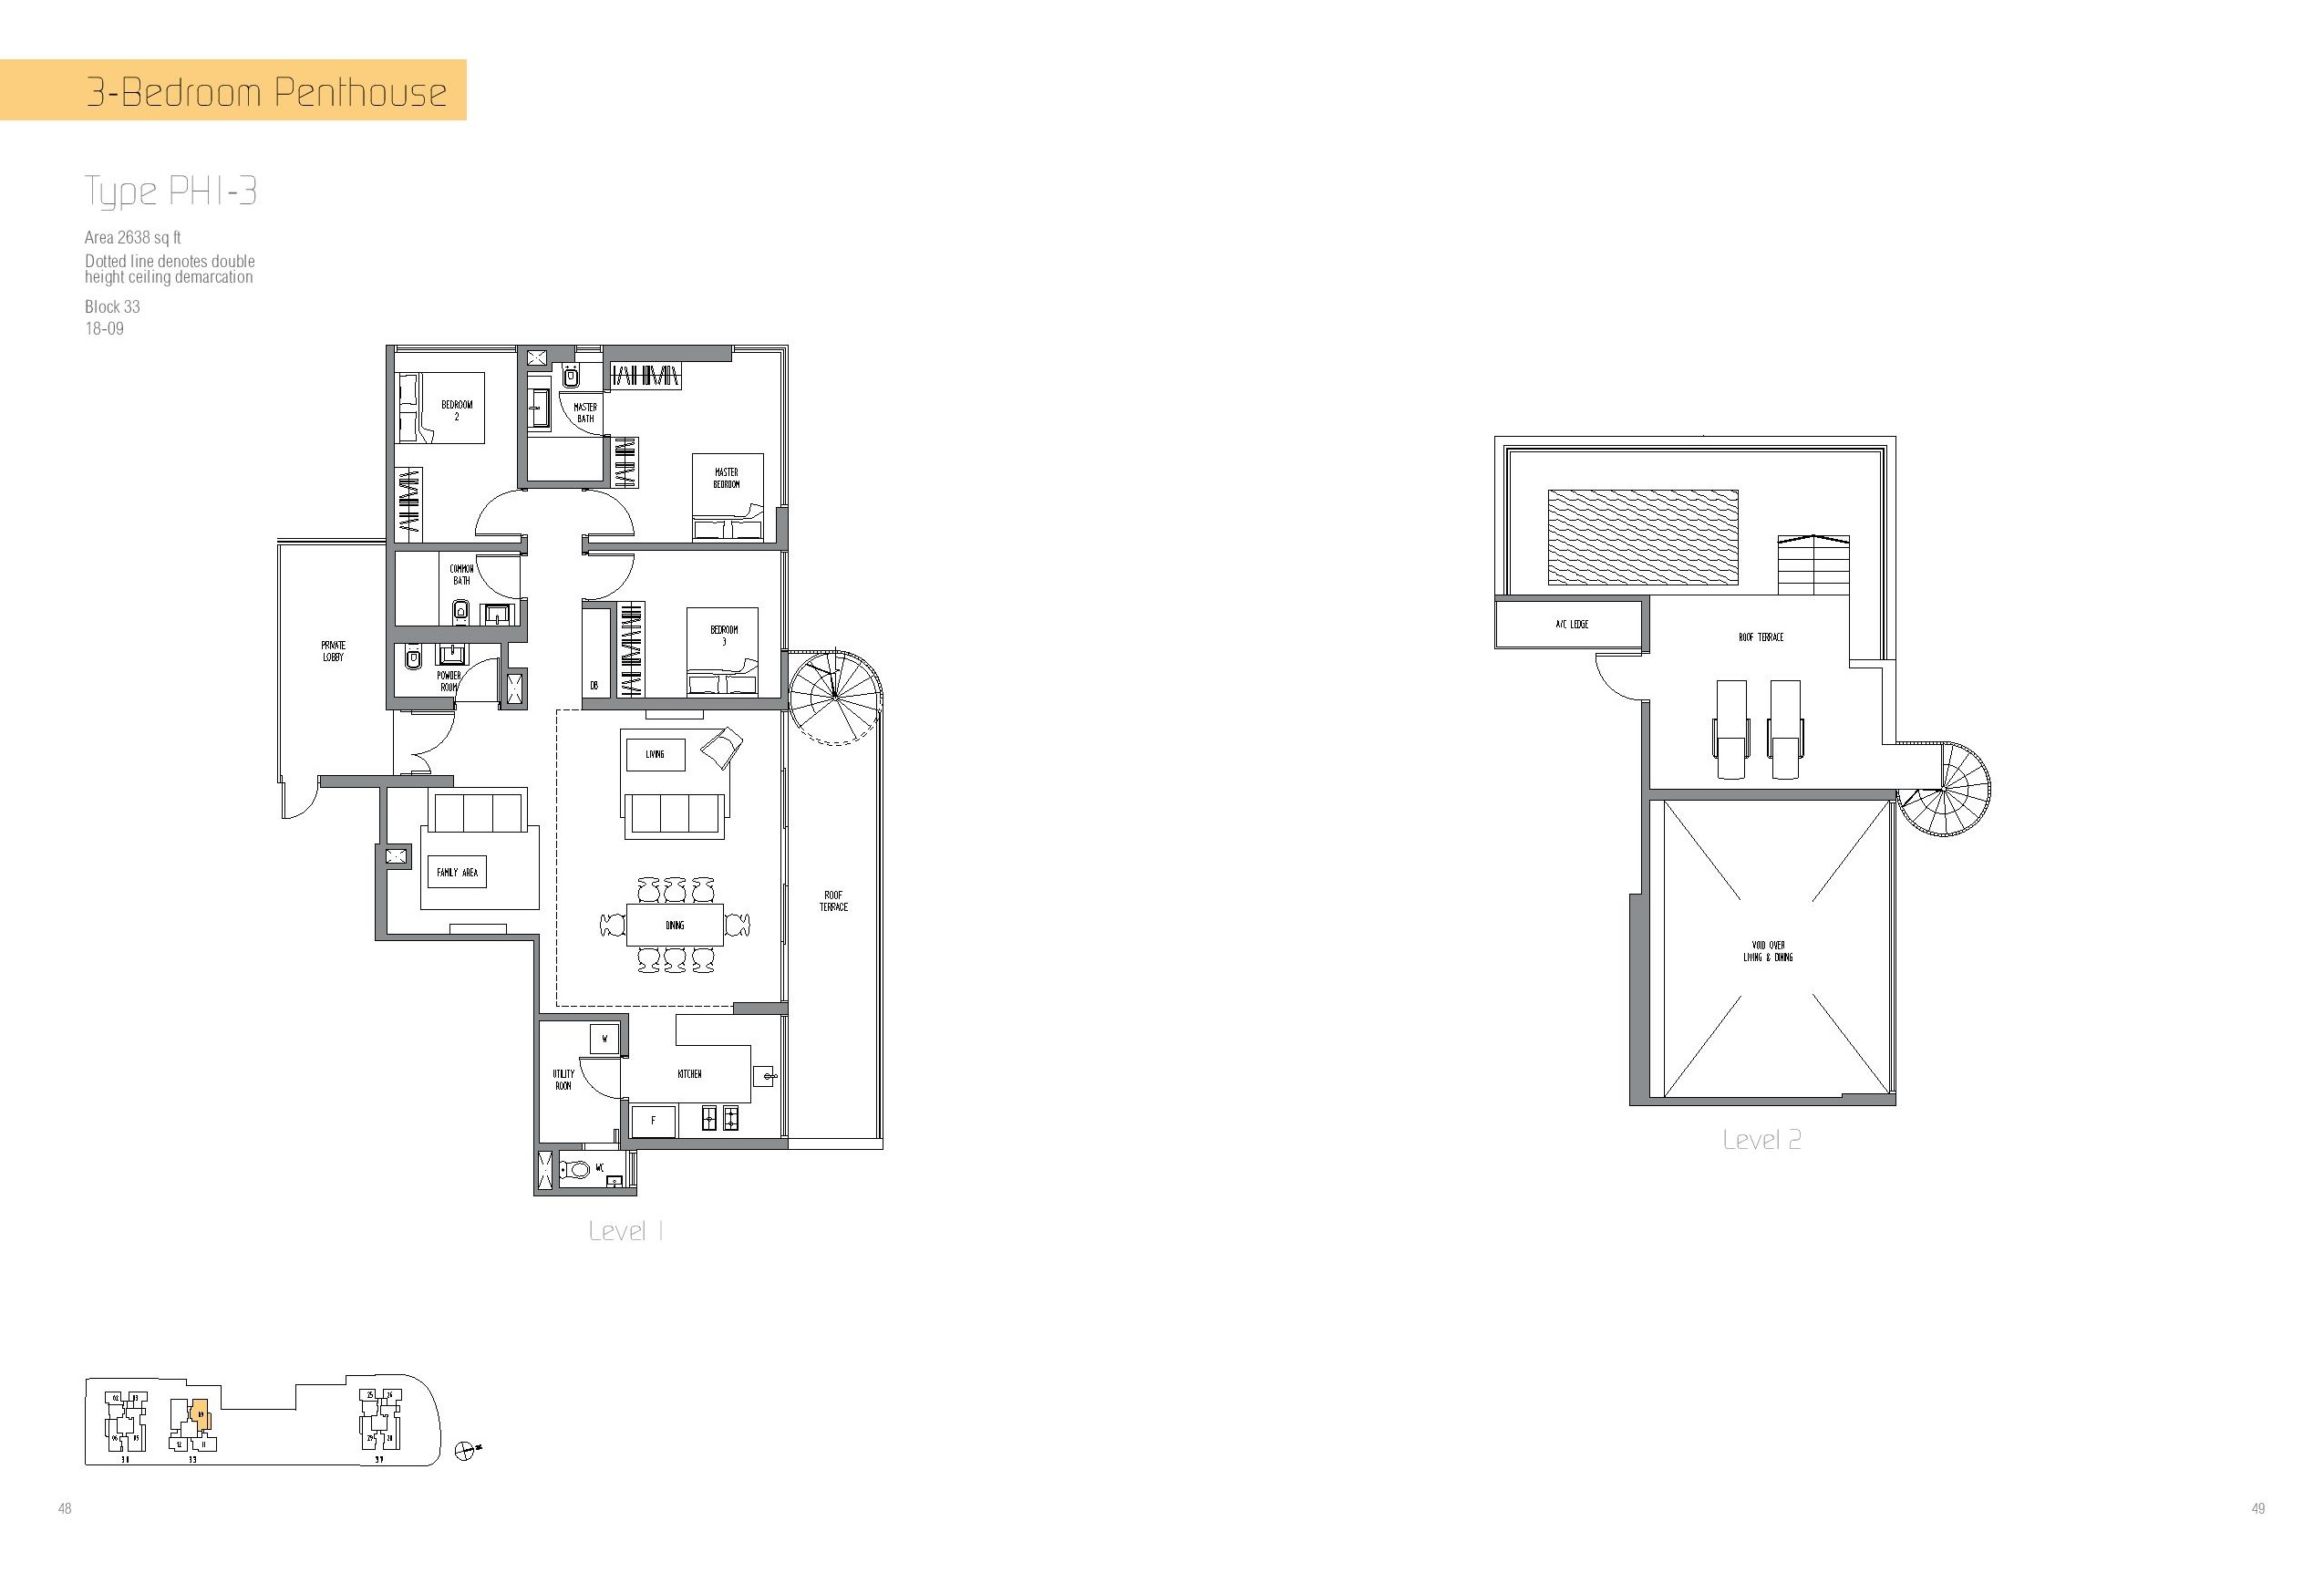 Sennett Residence 3 Bedroom Penthouse Type PH1-3 Floor Plan